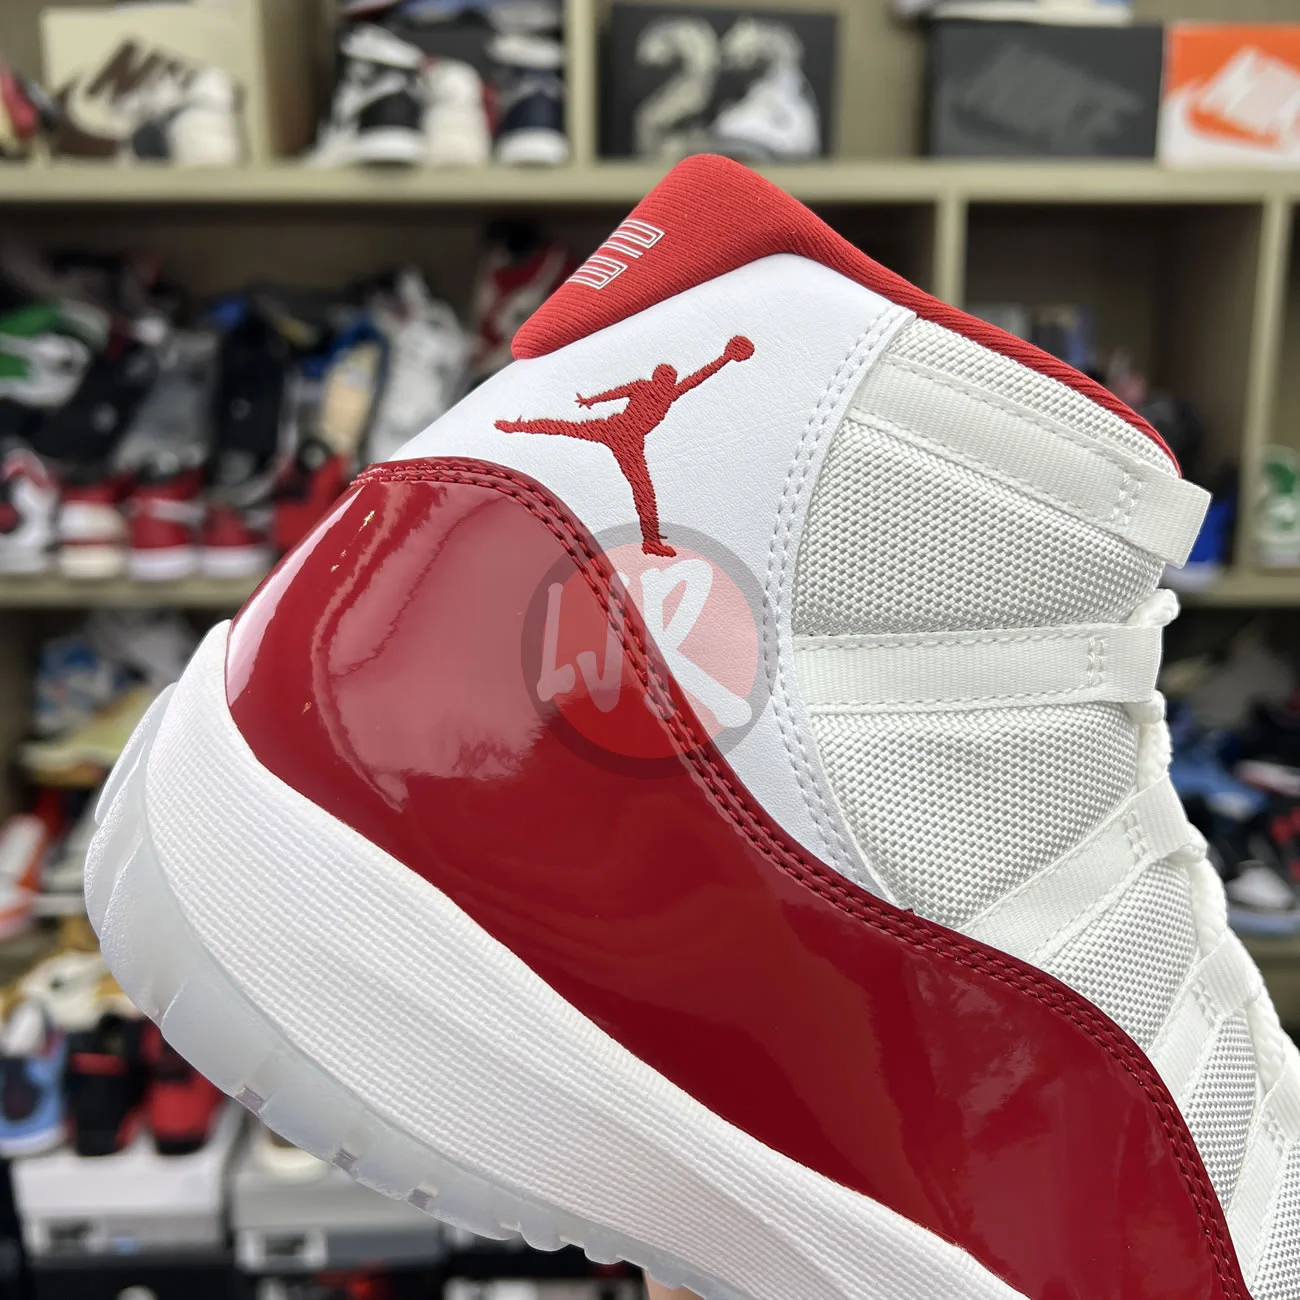 Air Jordan 11 Retro Cherry 2022 Ct8012 116 Ljr Sneakers (10) - bc-ljr.net